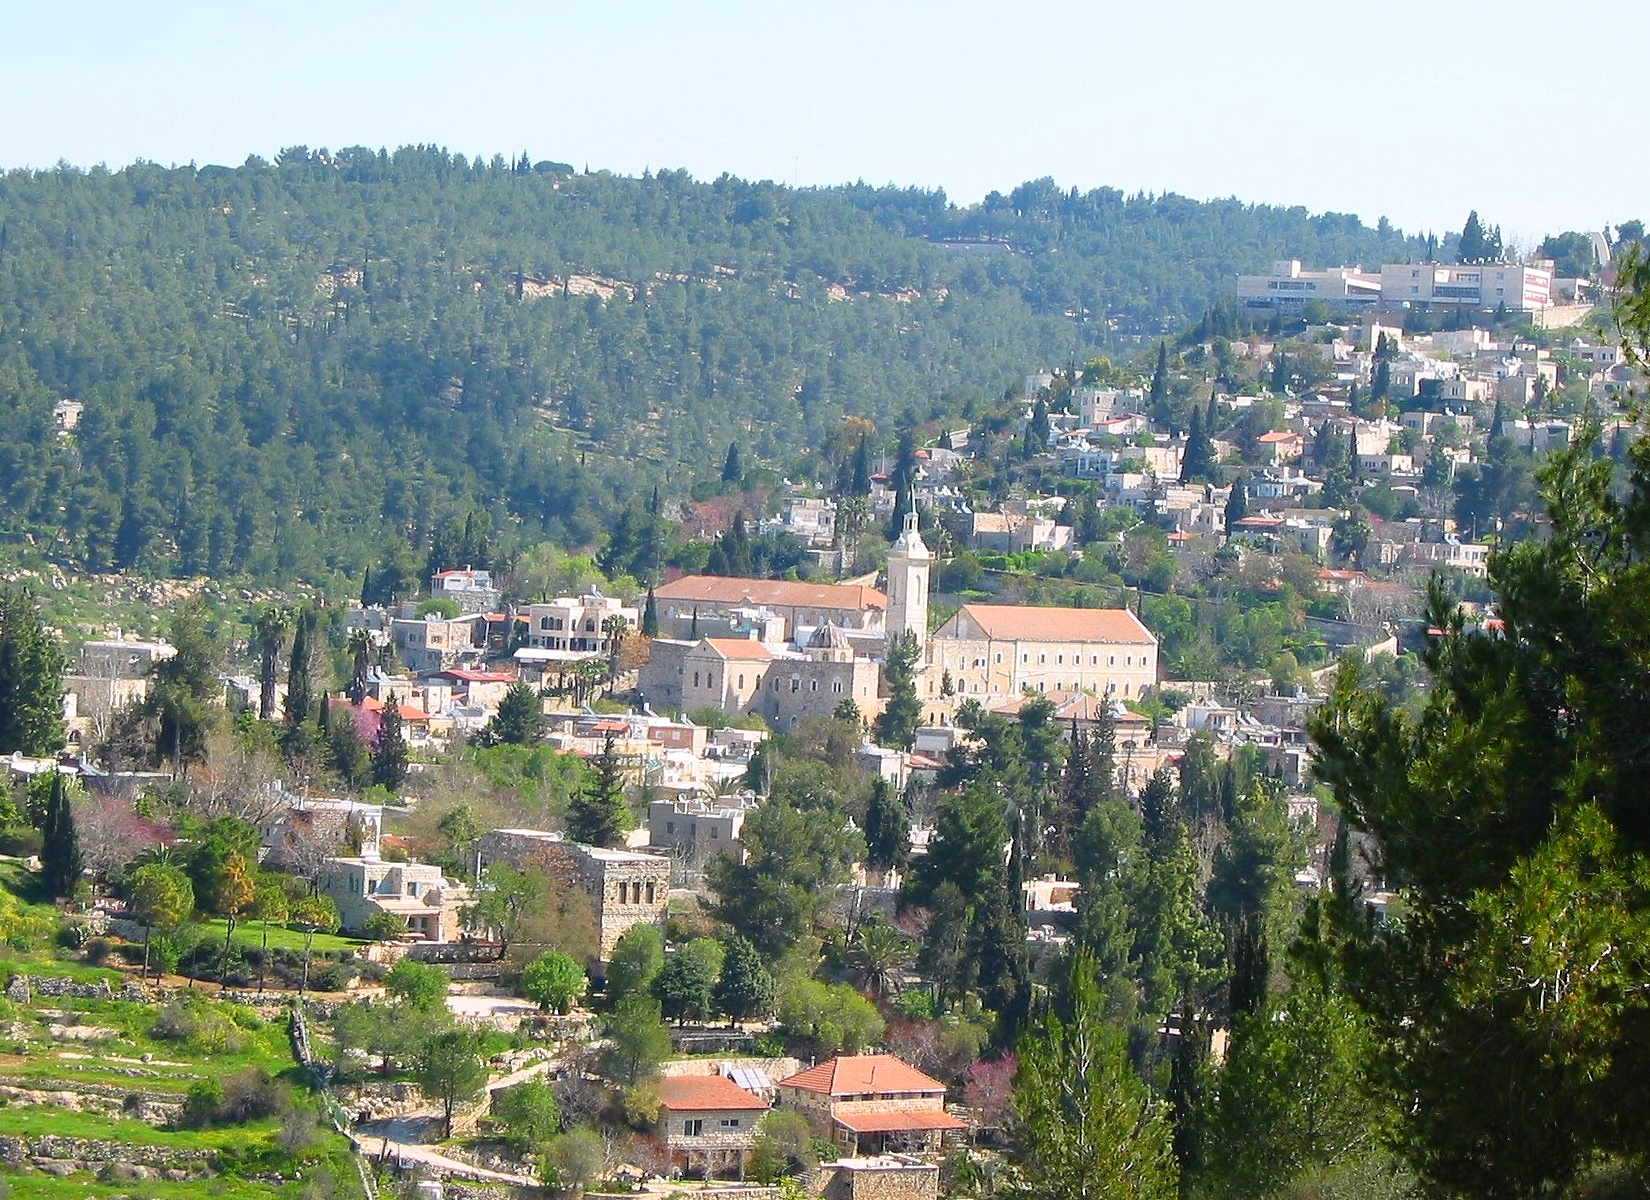 قرية عين كارم المهجرة في القدس المحتلة مع الرحالة المقدسي رمزي العباسي